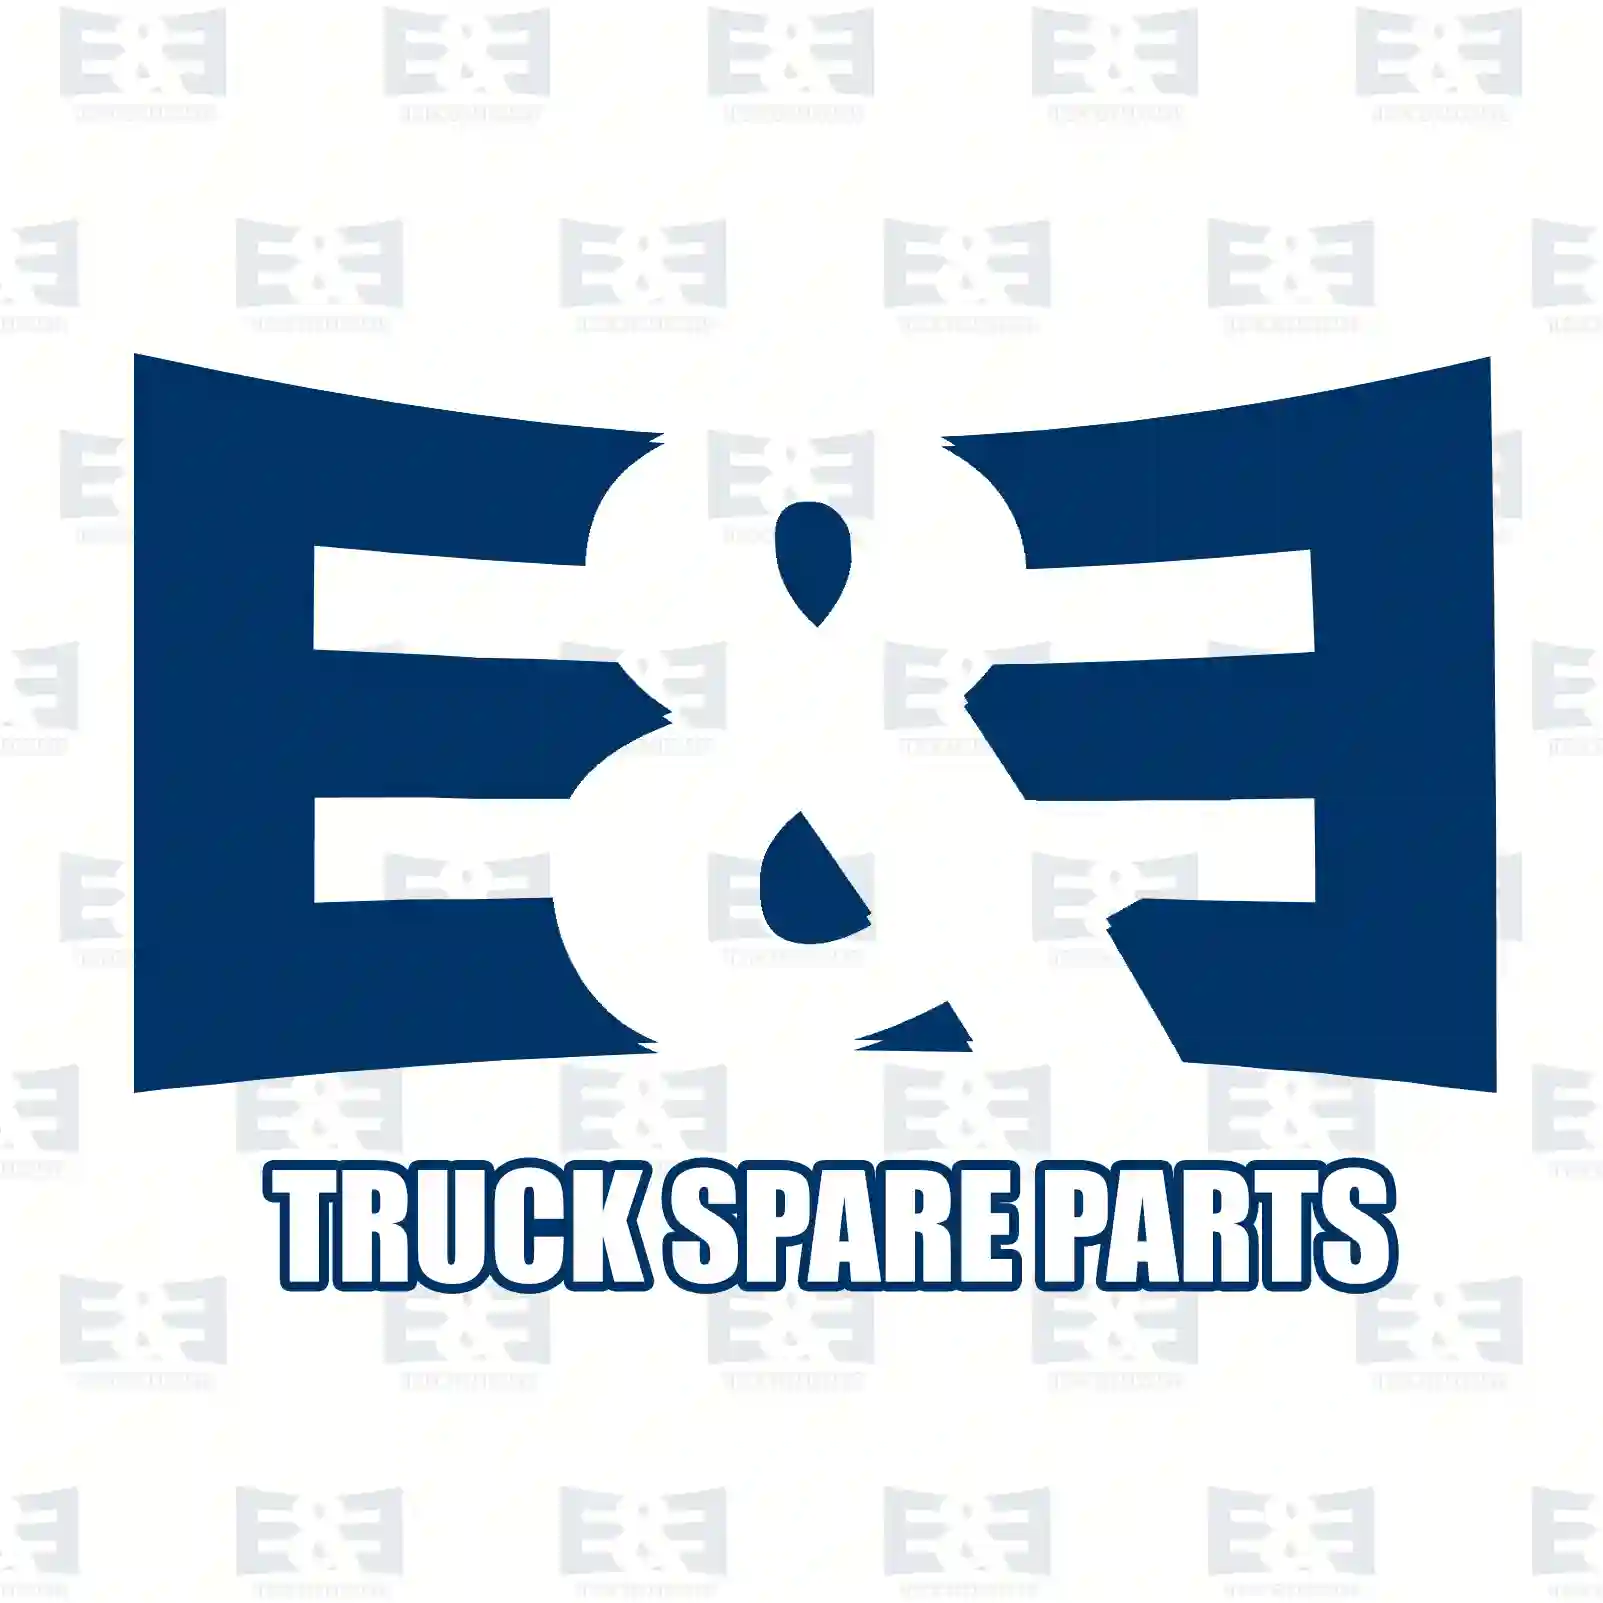 Air dryer, 2E2296947, 81521026218, 81521026370, 81521026372 ||  2E2296947 E&E Truck Spare Parts | Truck Spare Parts, Auotomotive Spare Parts Air dryer, 2E2296947, 81521026218, 81521026370, 81521026372 ||  2E2296947 E&E Truck Spare Parts | Truck Spare Parts, Auotomotive Spare Parts